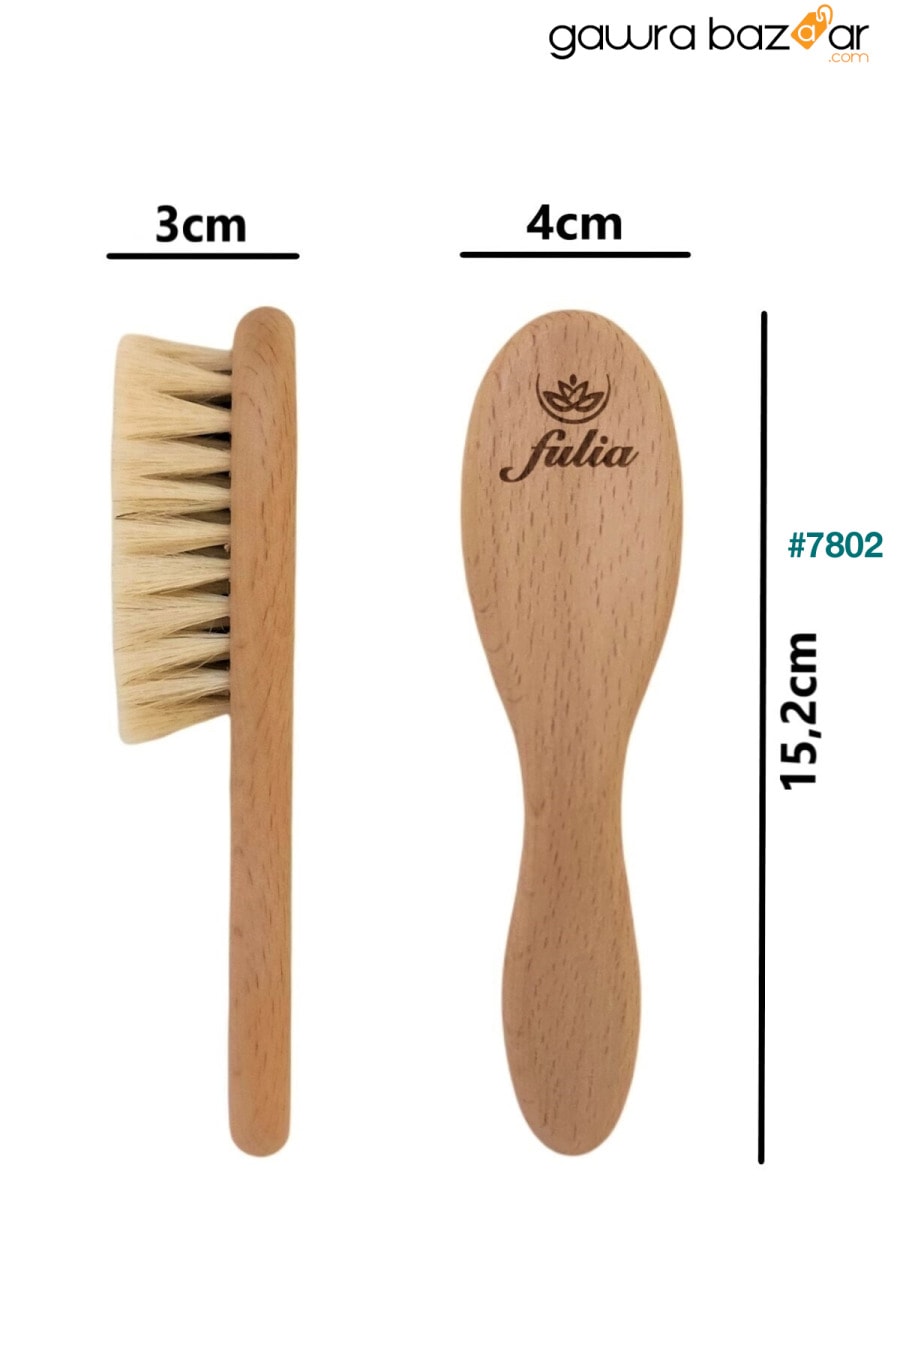 مجموعة مكونة من 2 فرشاة شعر من شعر الماعز الطبيعي ومشط من الخشب الطبيعي - مقاس متوسط Fulia 2